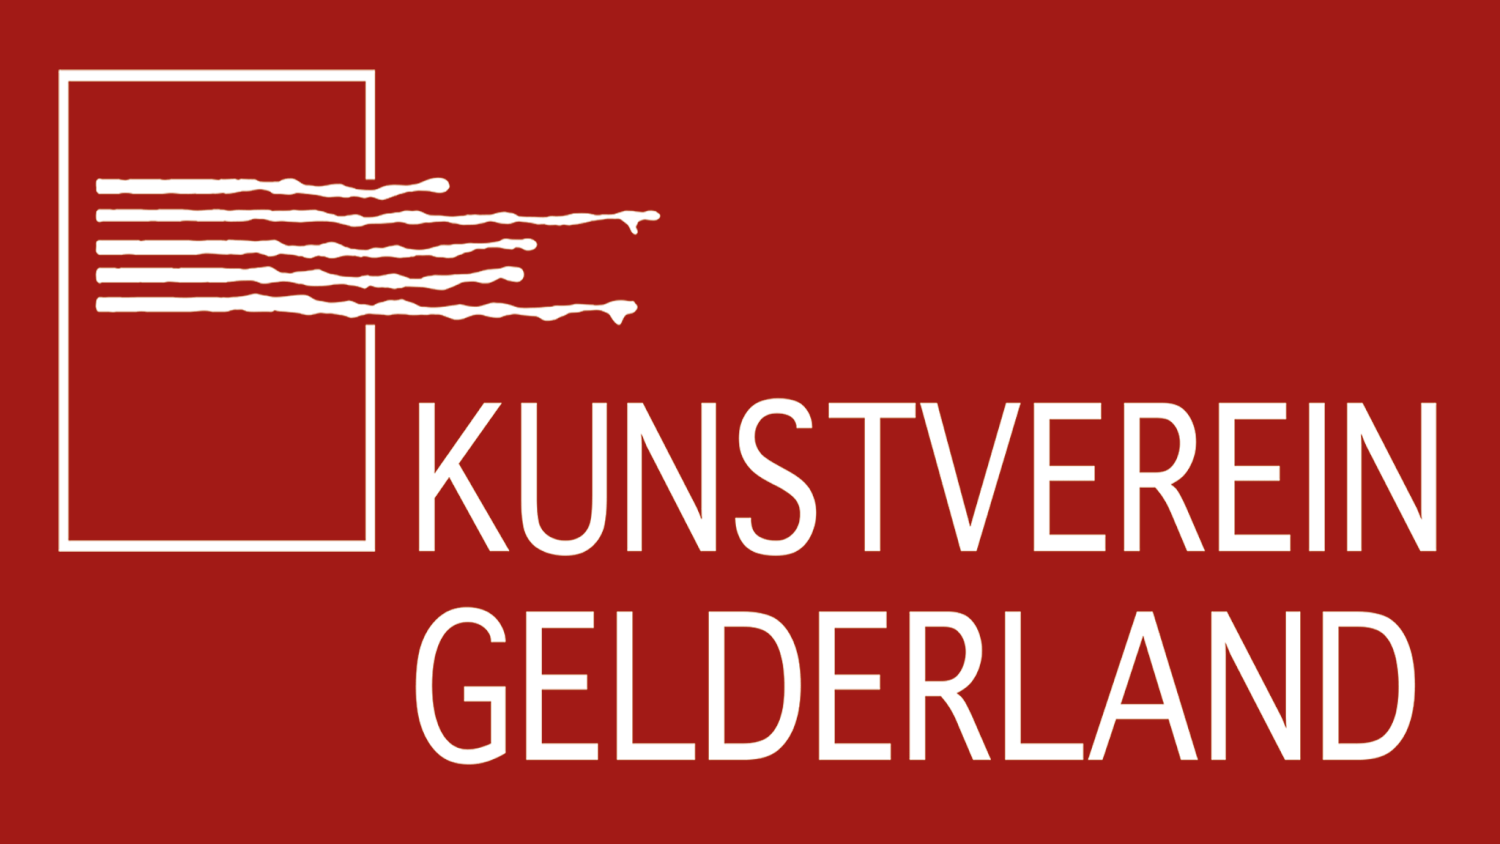 Kunstverein Gelderland e. V.